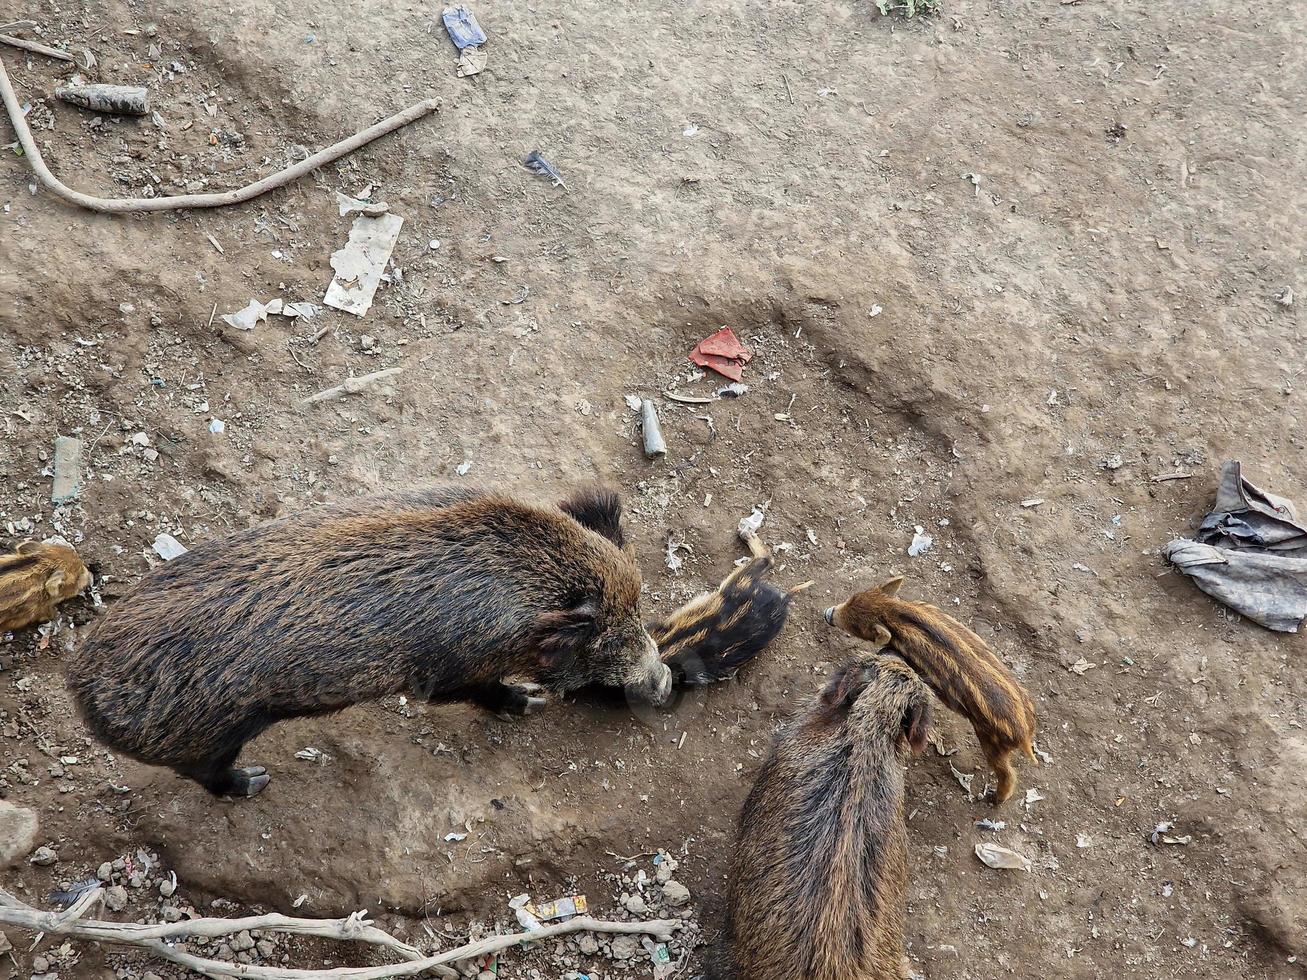 peste porcina jabalí en la ciudad de génova río bisagno vida silvestre urbana buscando comida en la basura y descansando foto